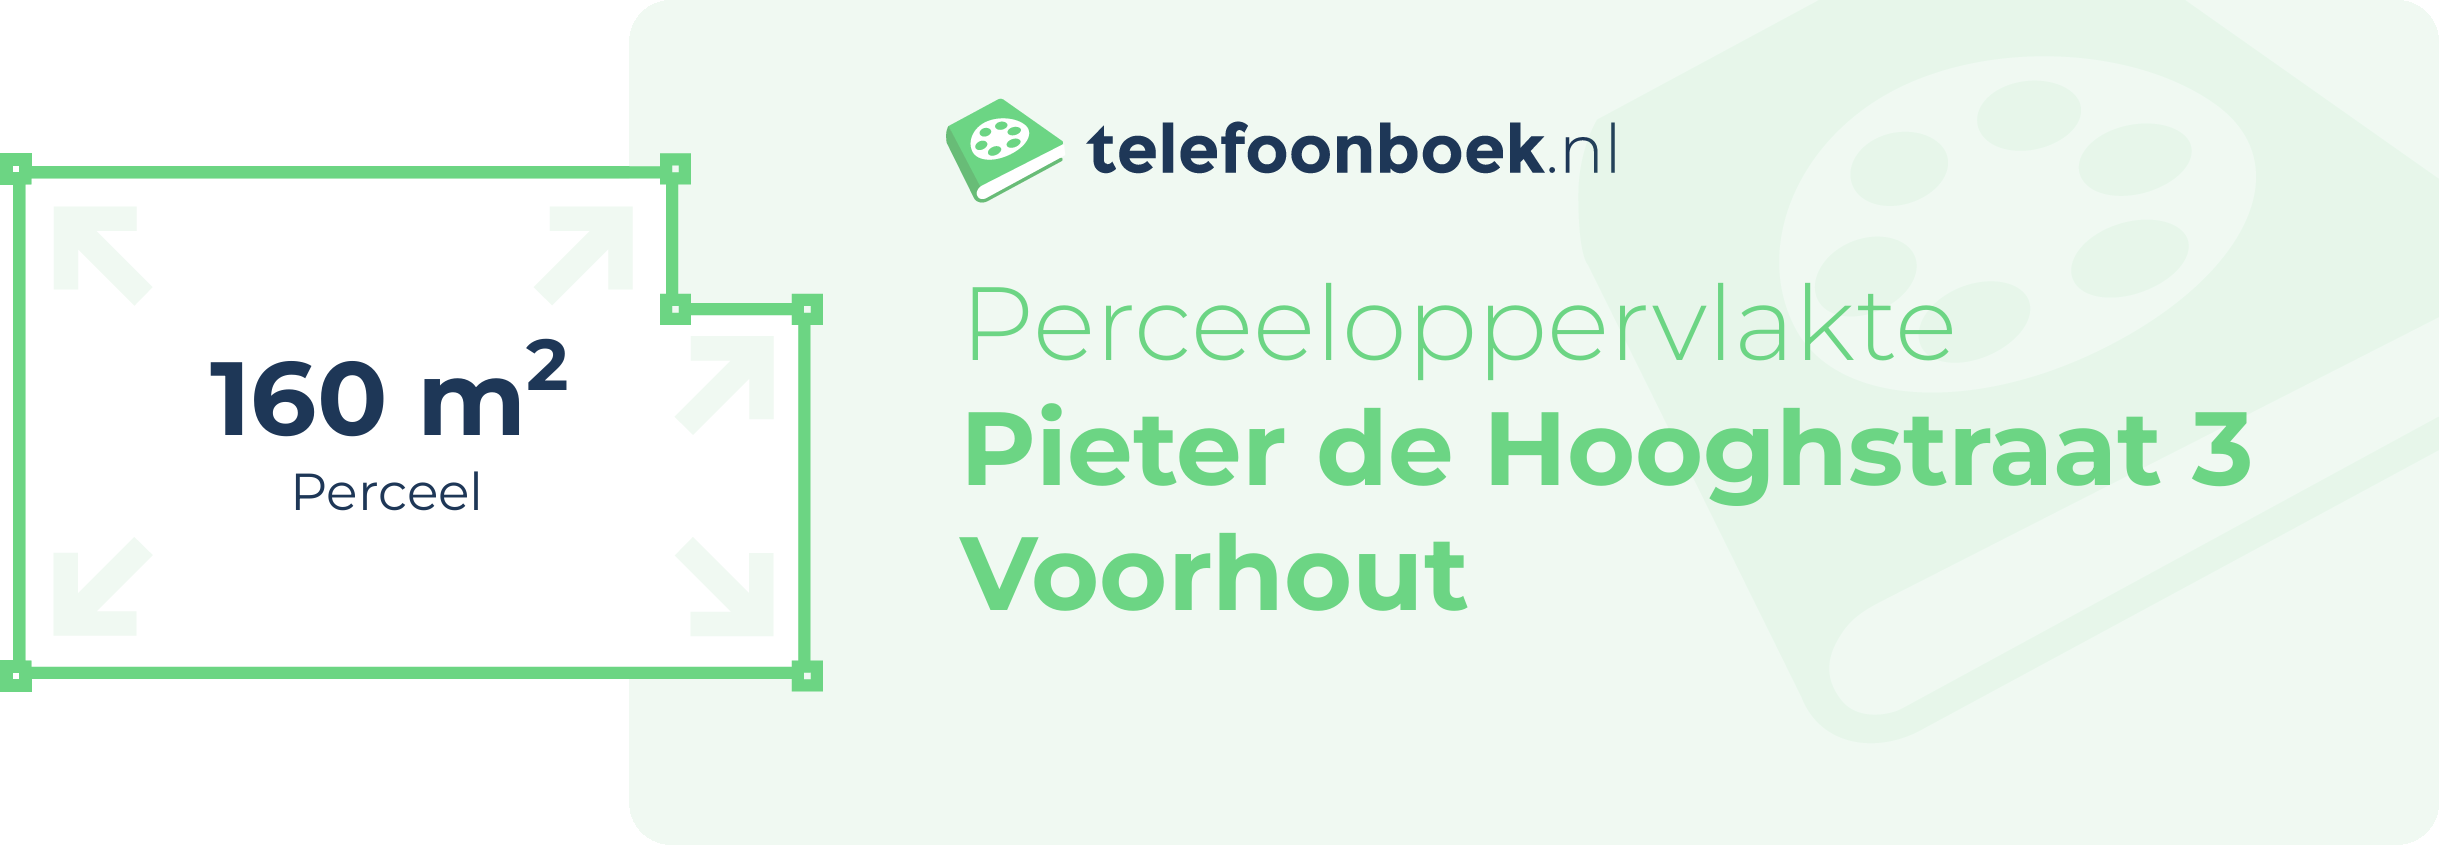 Perceeloppervlakte Pieter De Hooghstraat 3 Voorhout